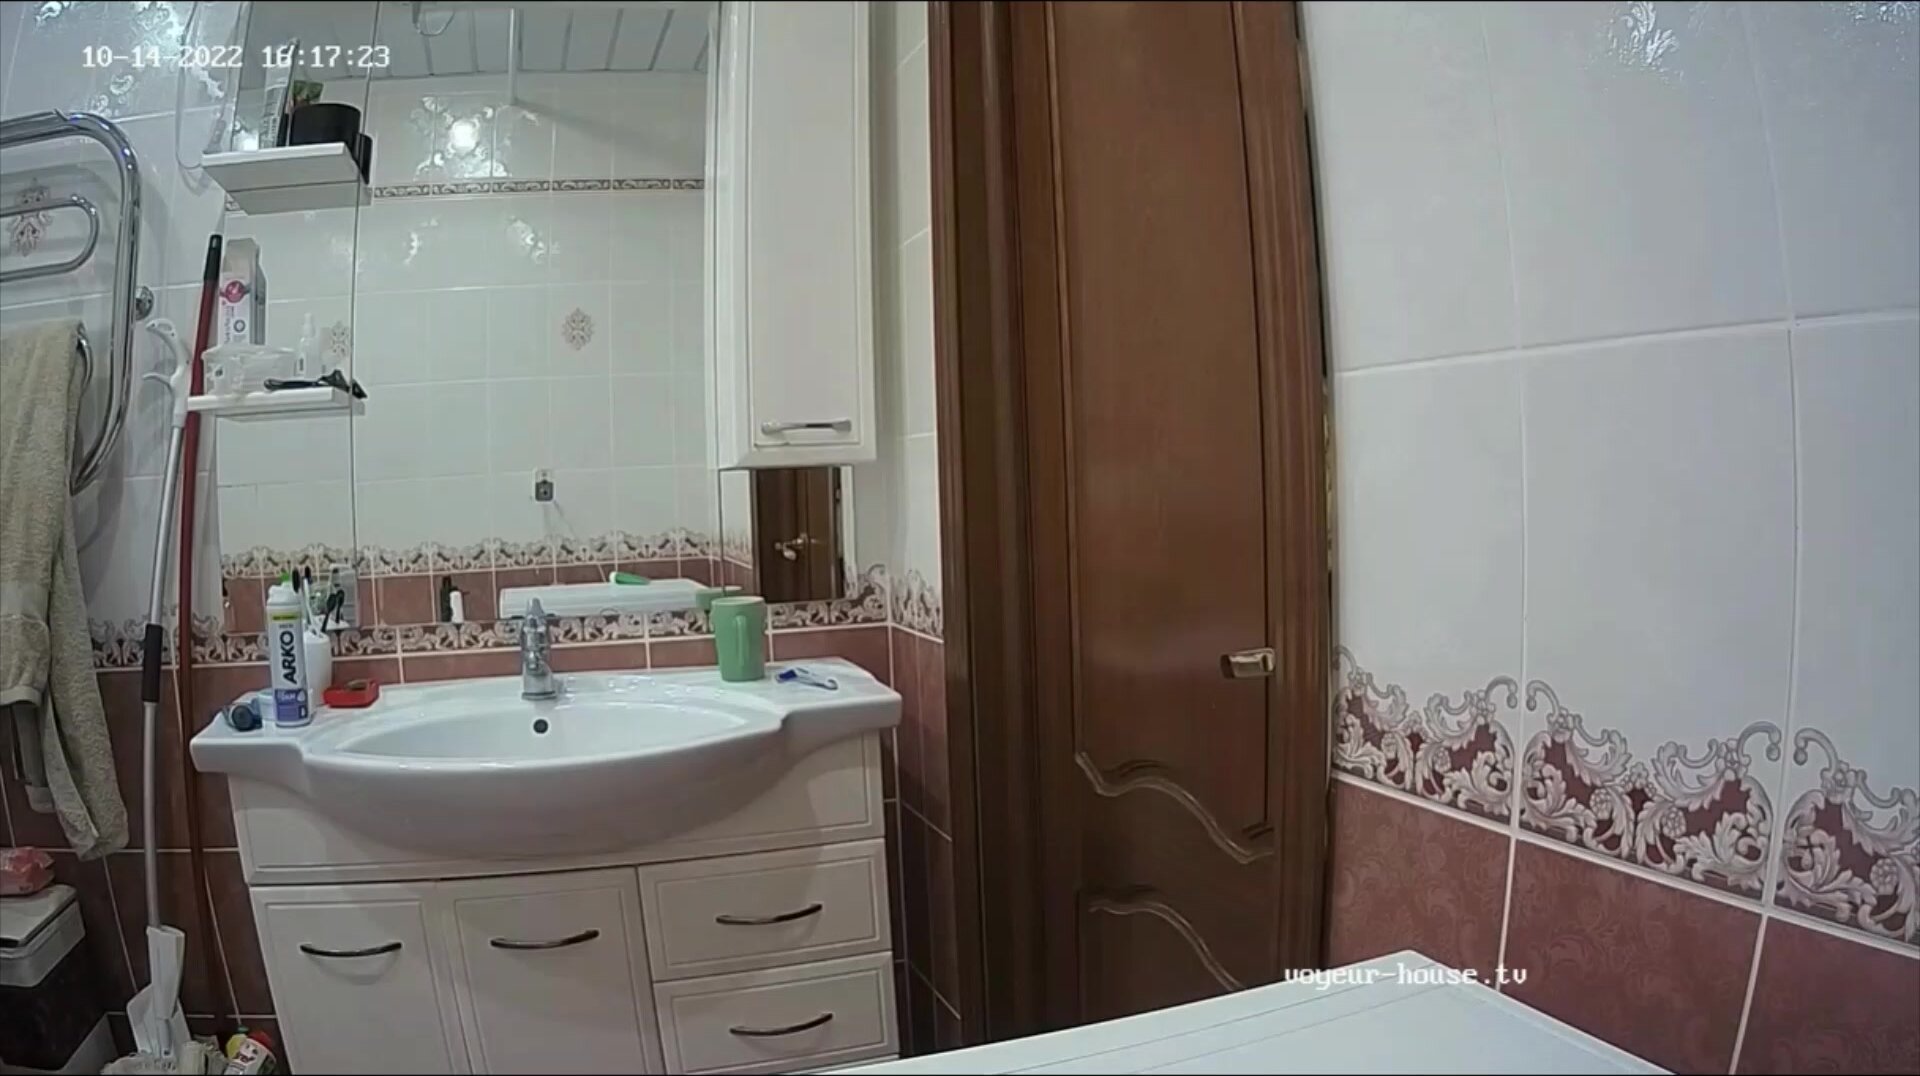 Woman pooping in Toilet 479